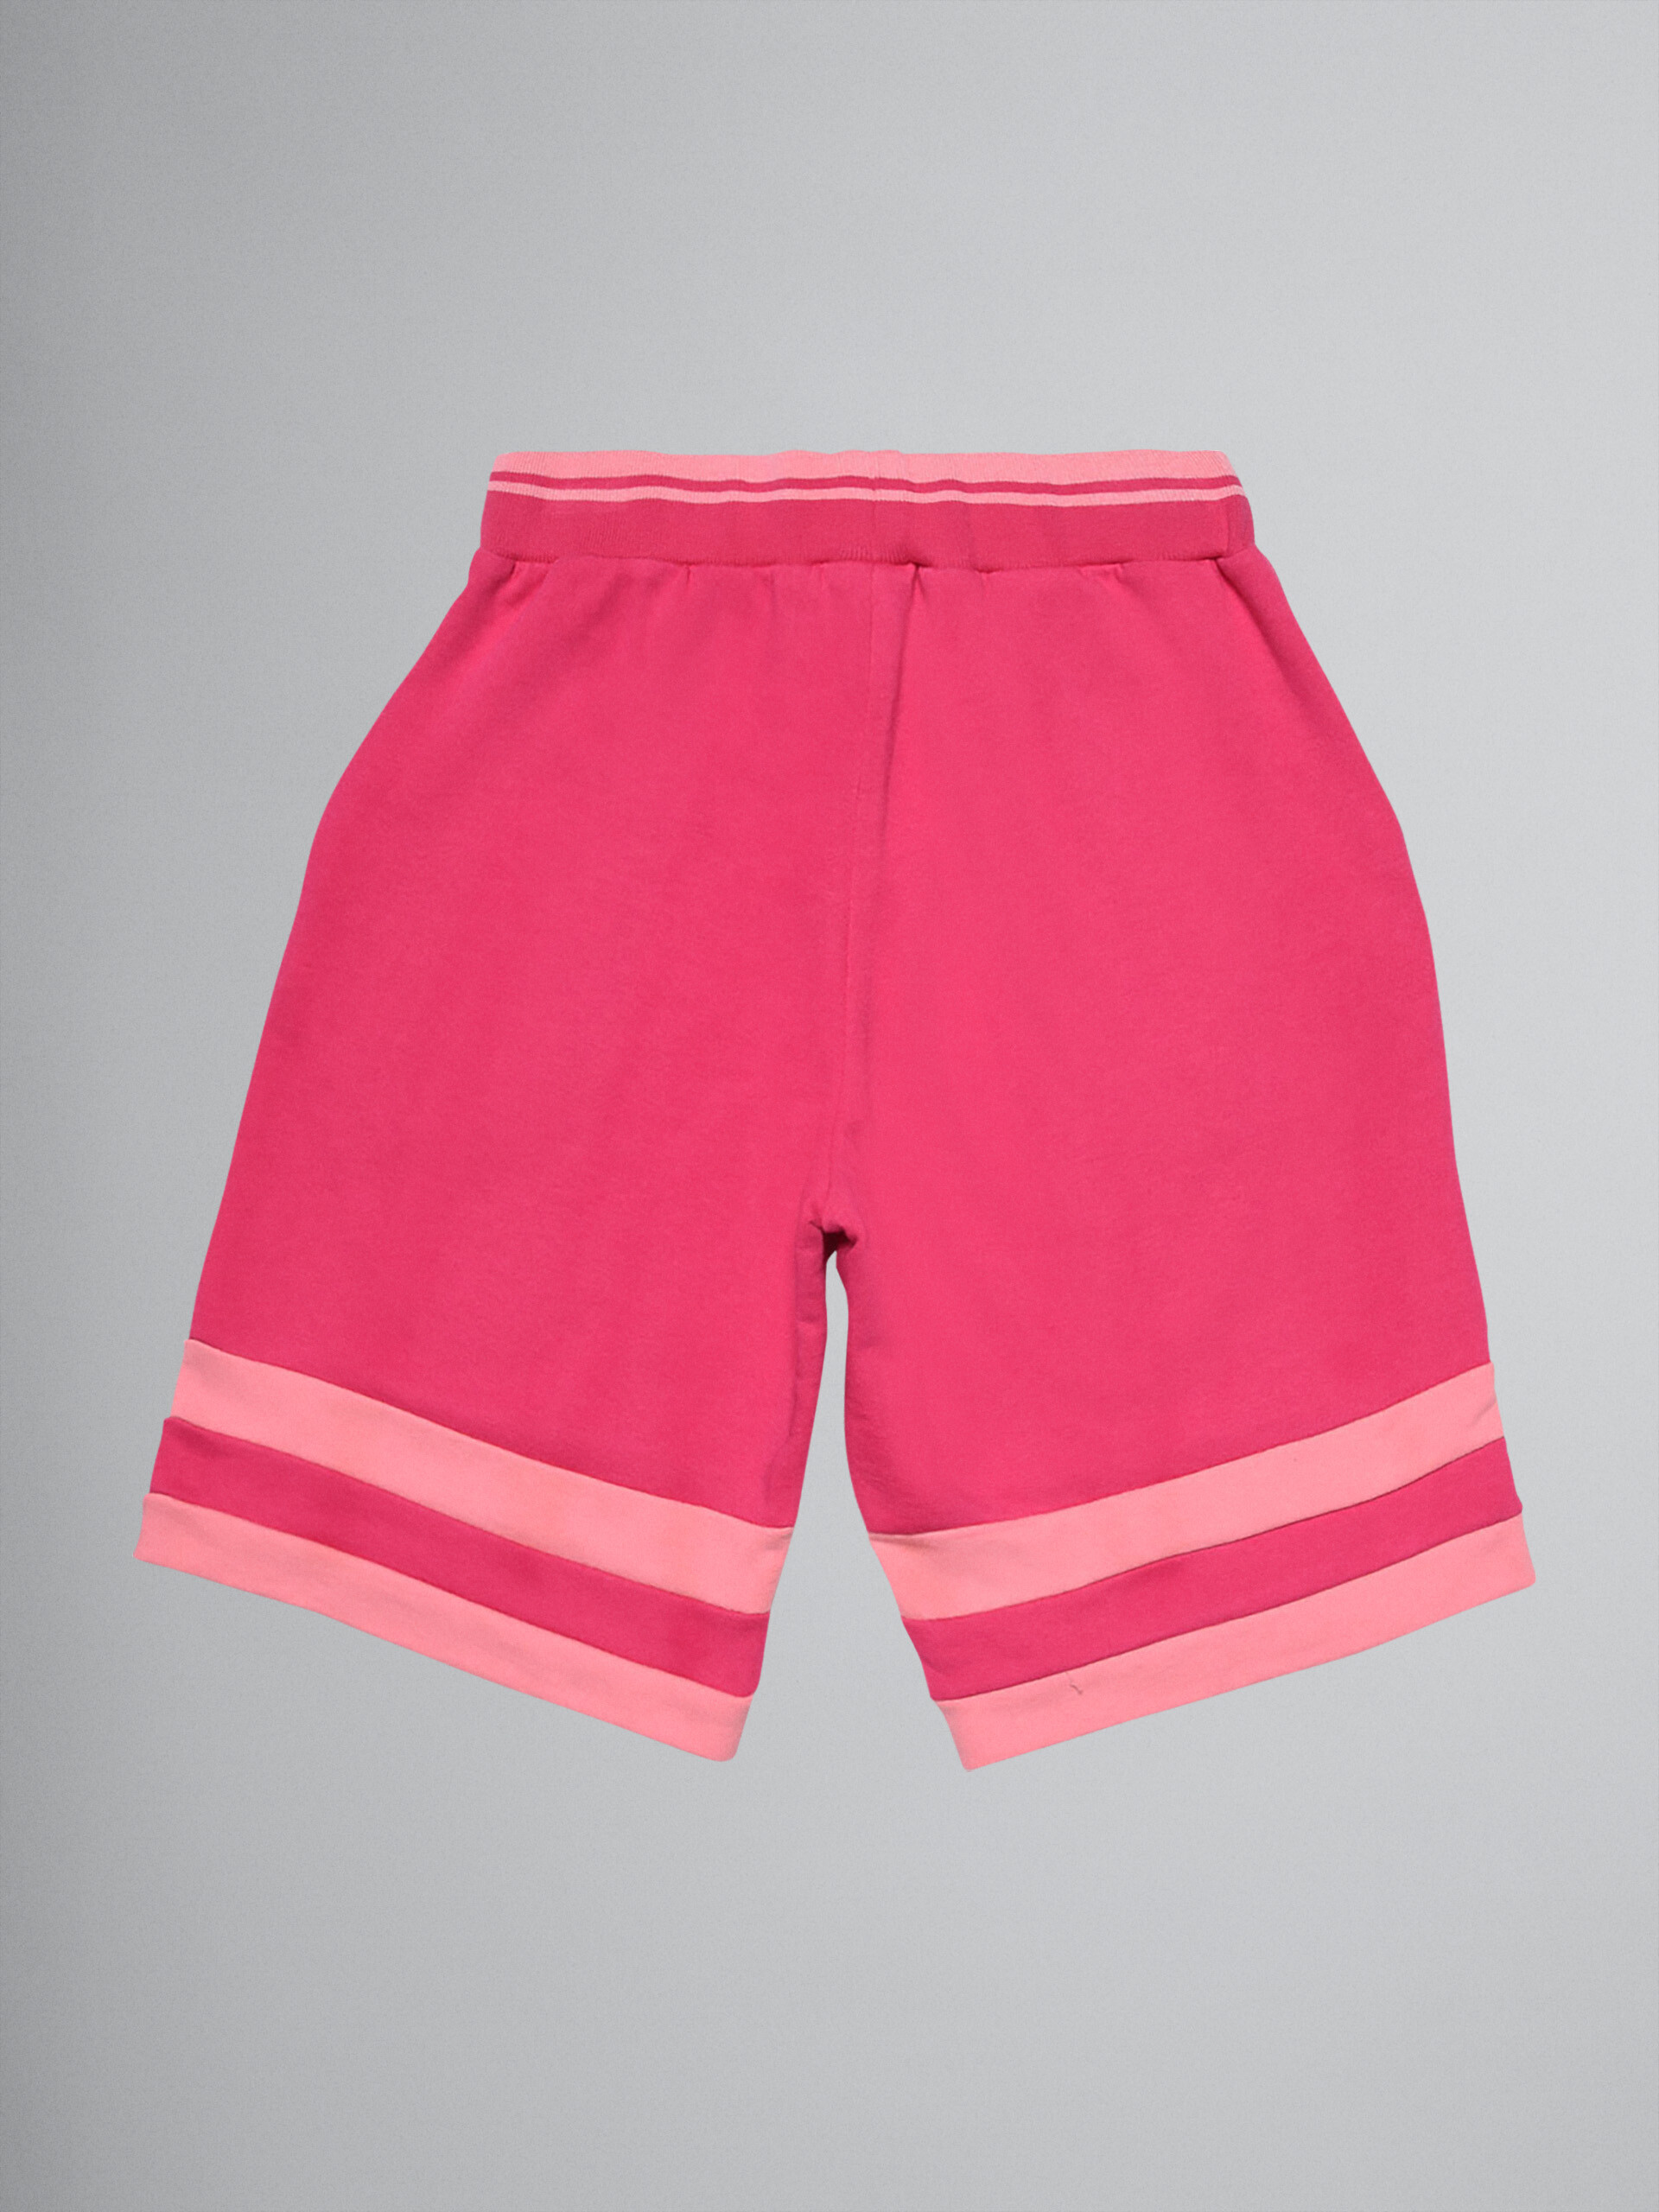 Colour-block pink sweatshirt cotton short track pants - Pants - Image 2